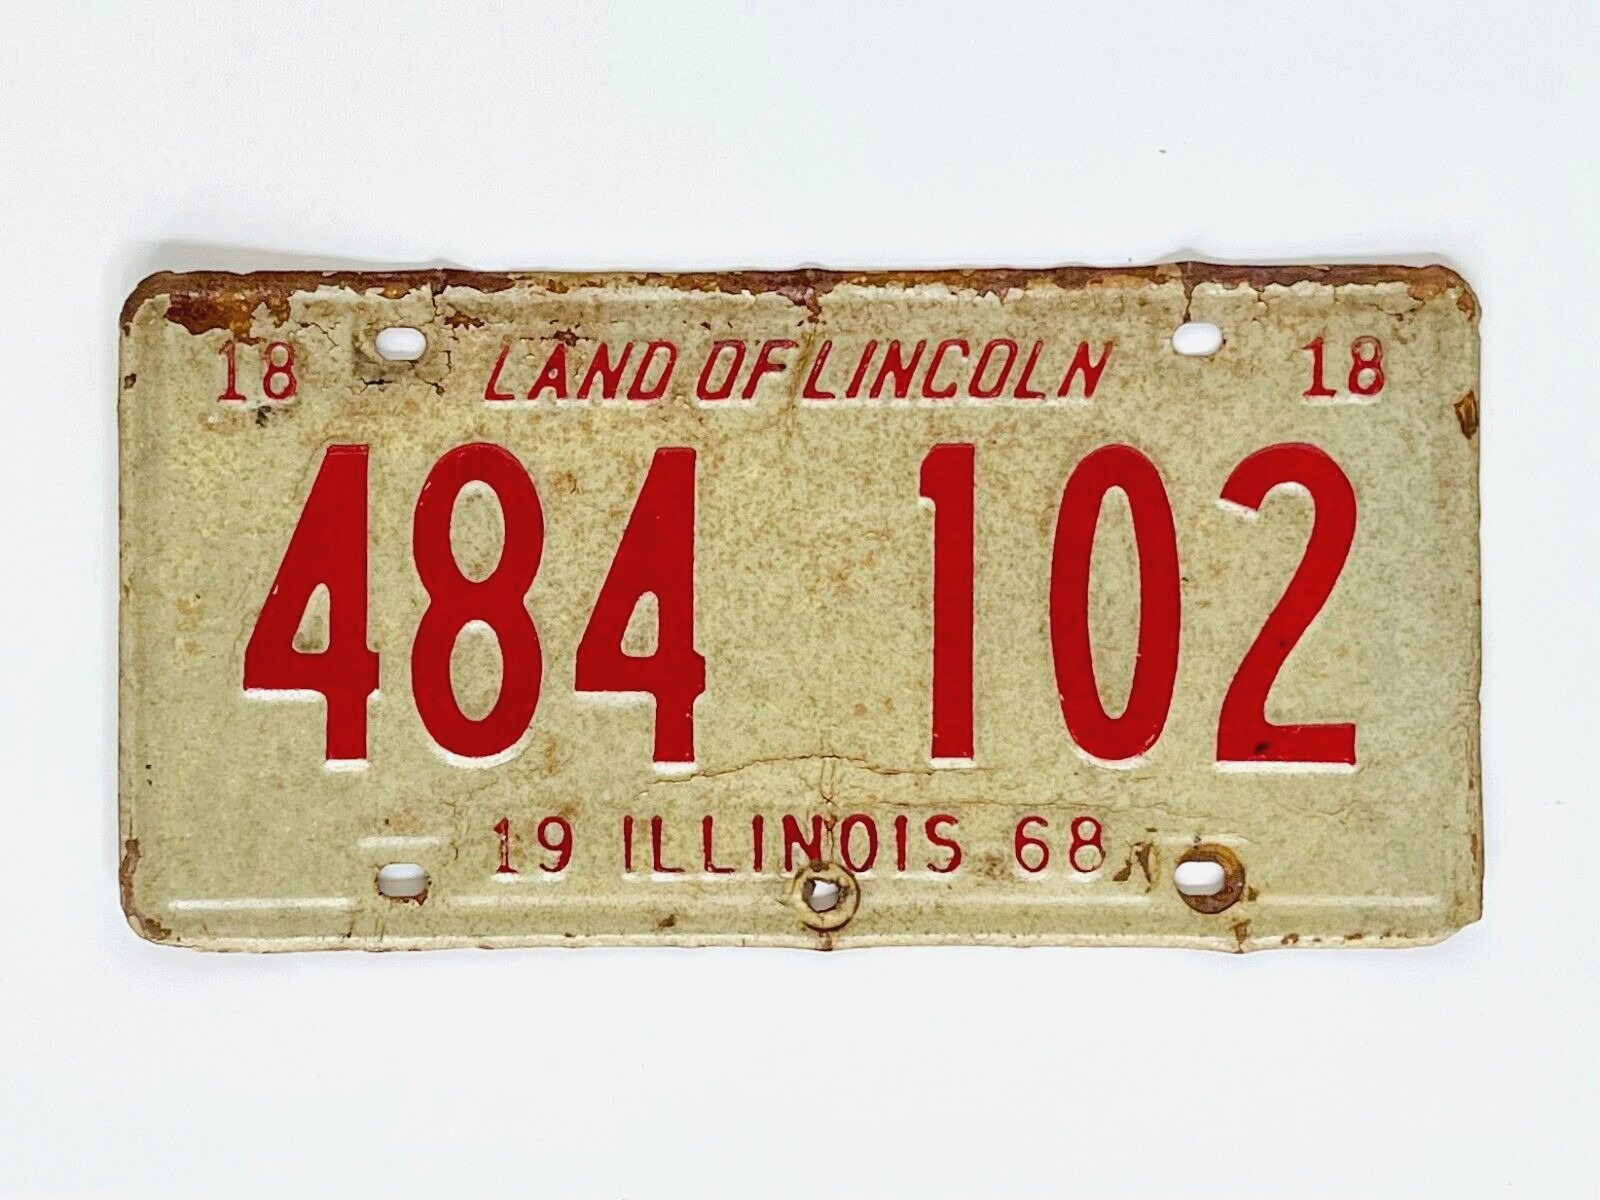 ILLINOIS 1968  -  (1) vintage license plate